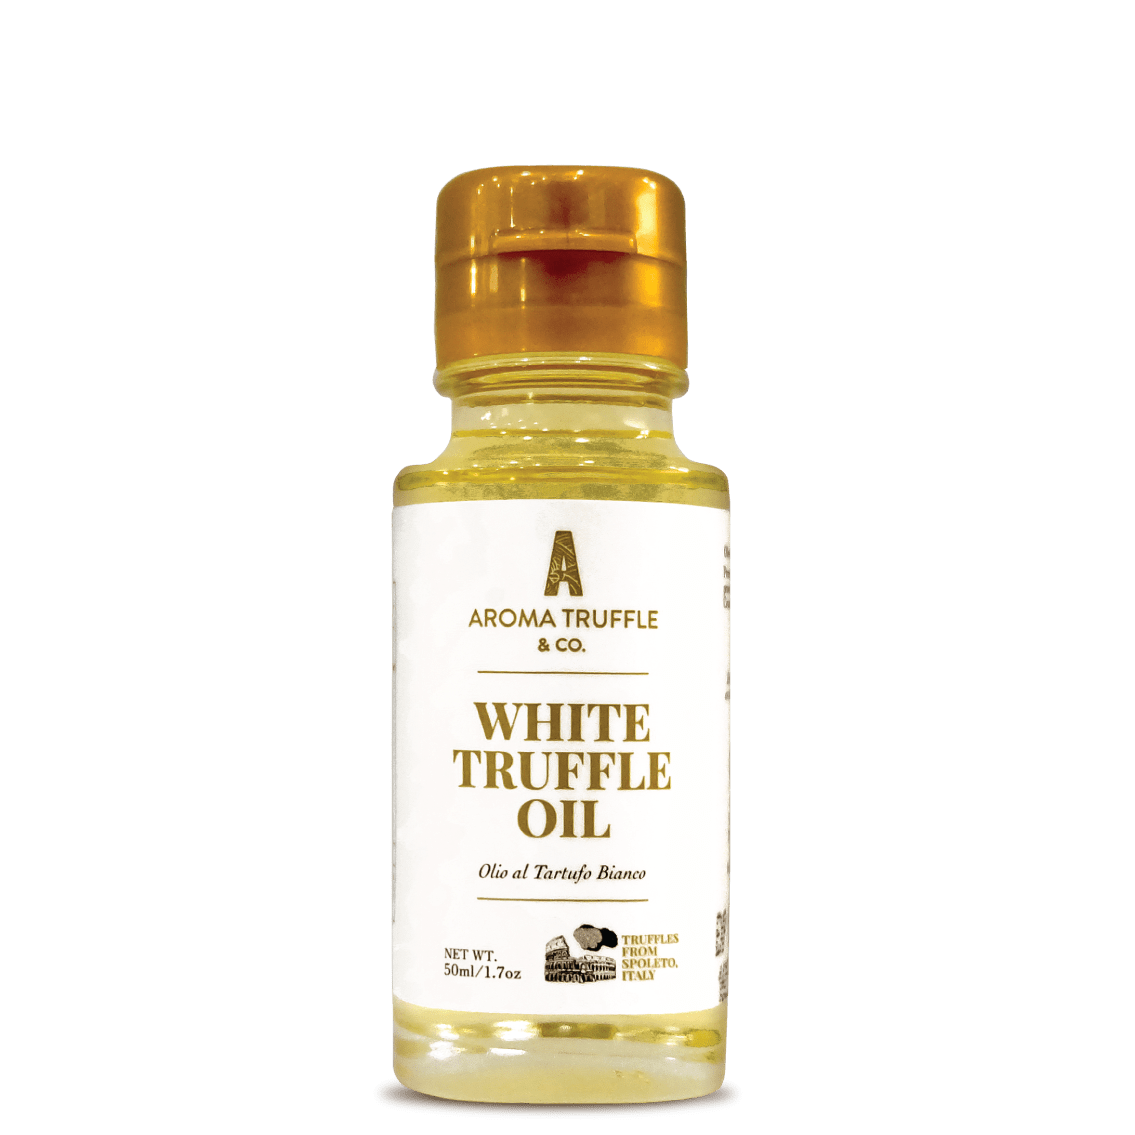 White Truffle Oil (50ml) - Aroma Truffle